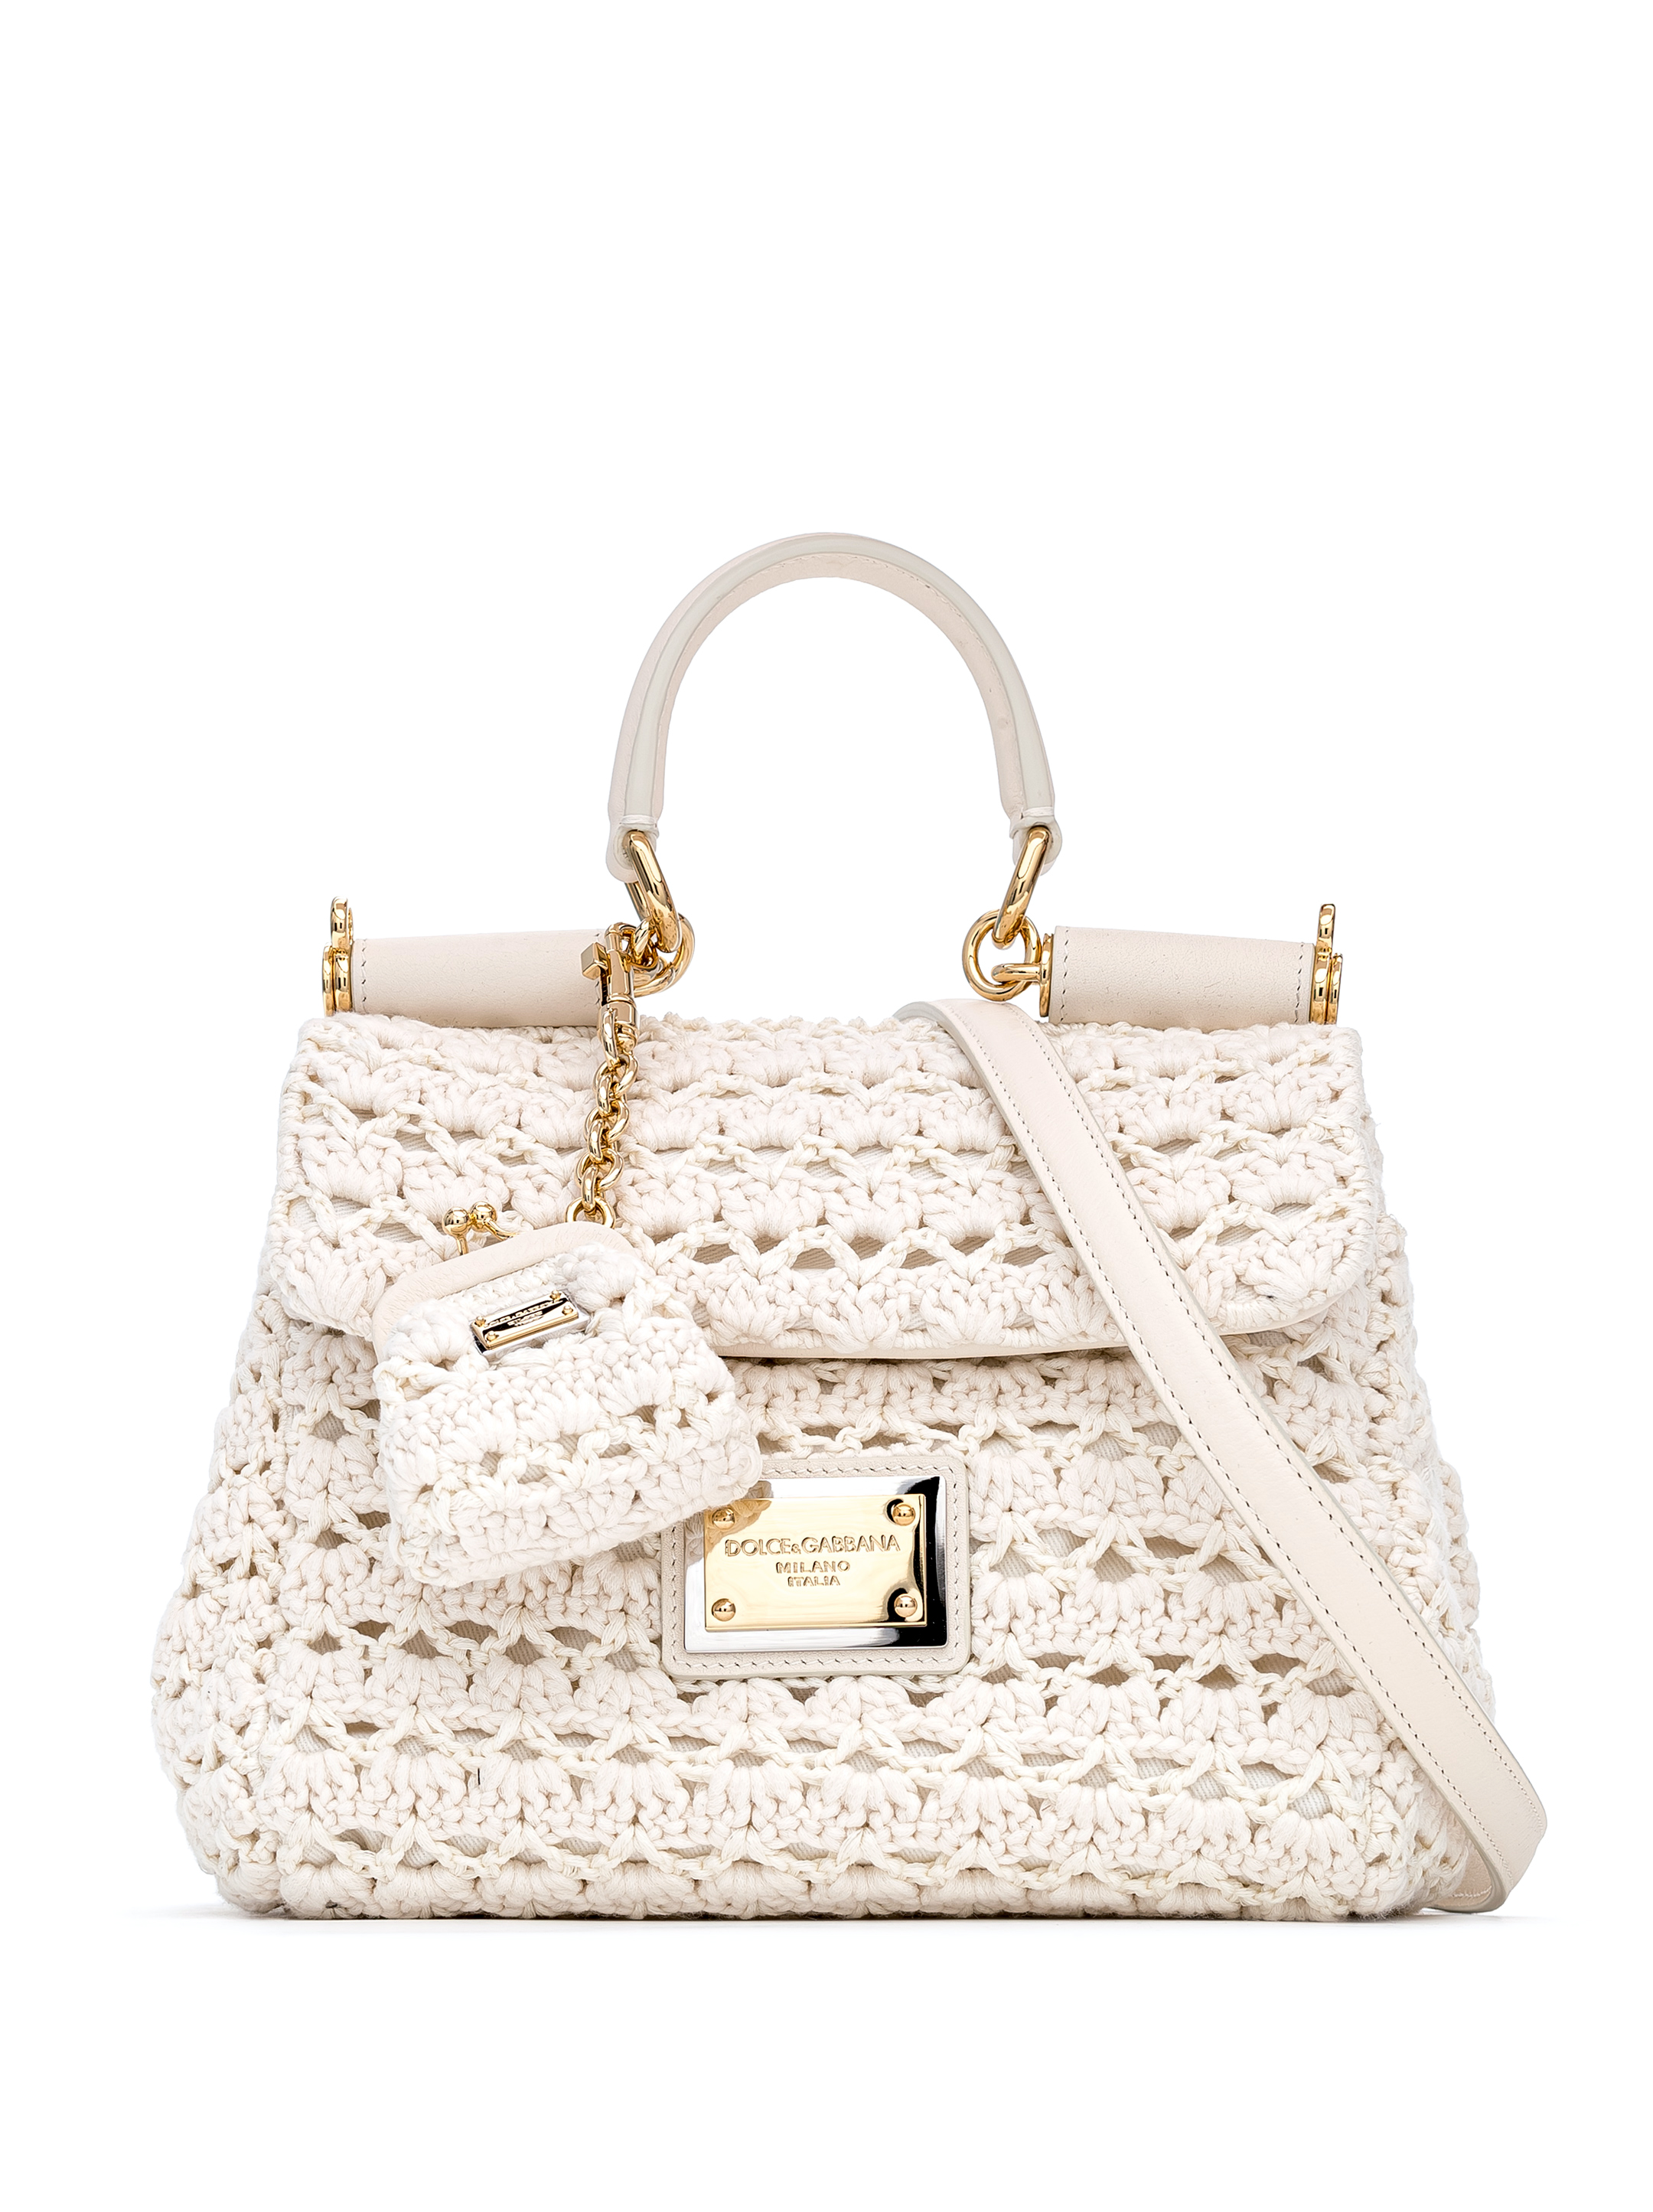 Идеи на тему «Сумки Dolce & Gabbana» () в г | сумки, вязаные сумки, сумочка